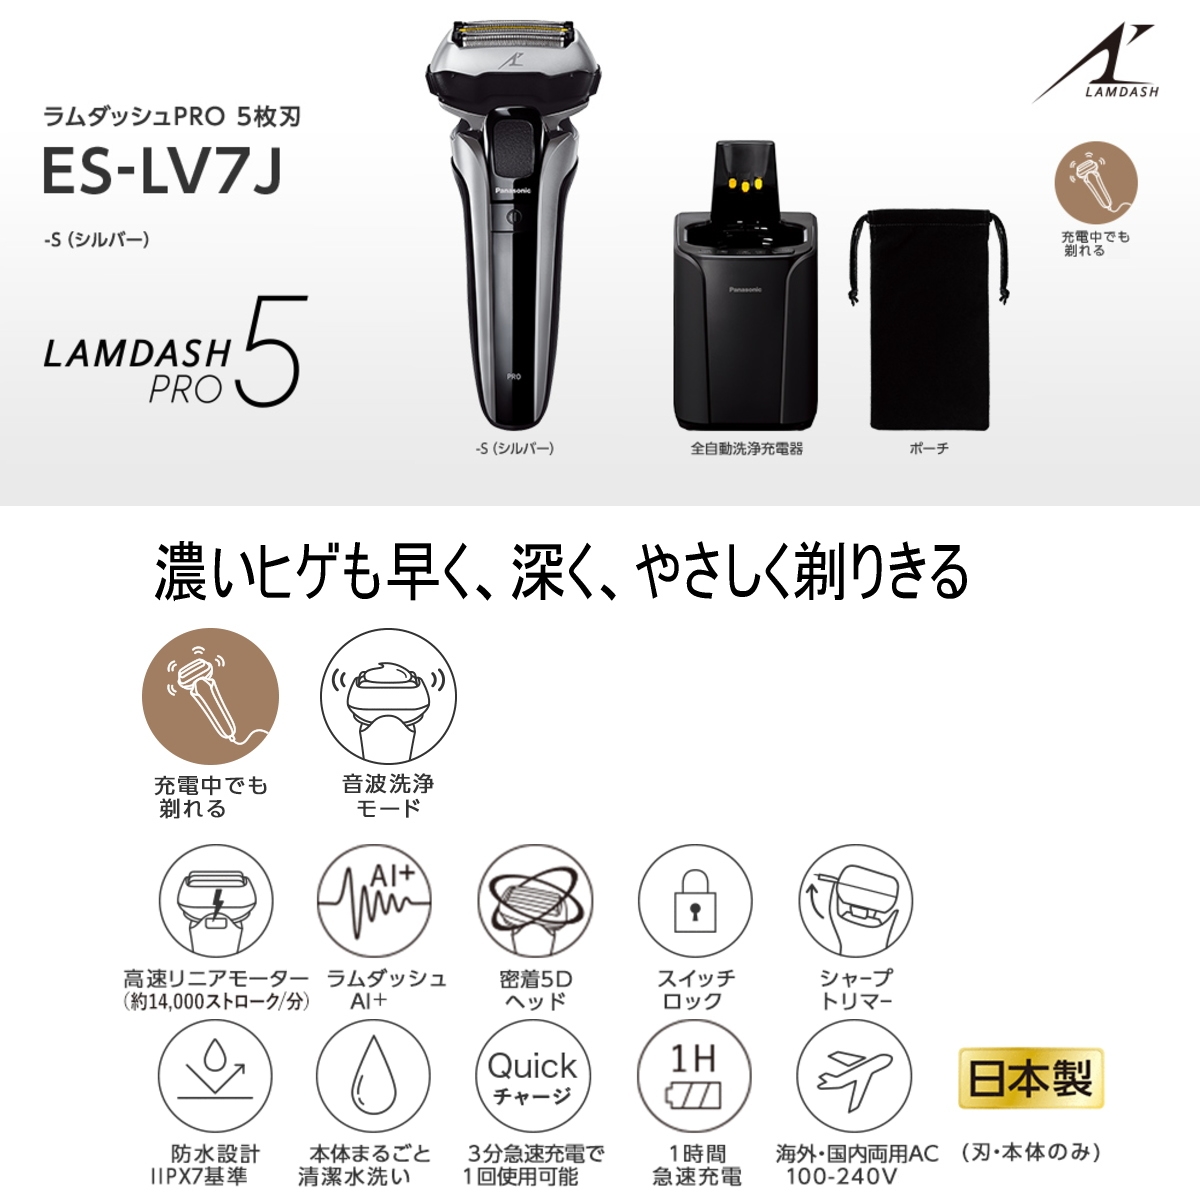 パナソニック ラムダッシュPRO メンズシェーバー 5枚刃 ES-LV7J-S シルバー 全自動洗浄充電器付